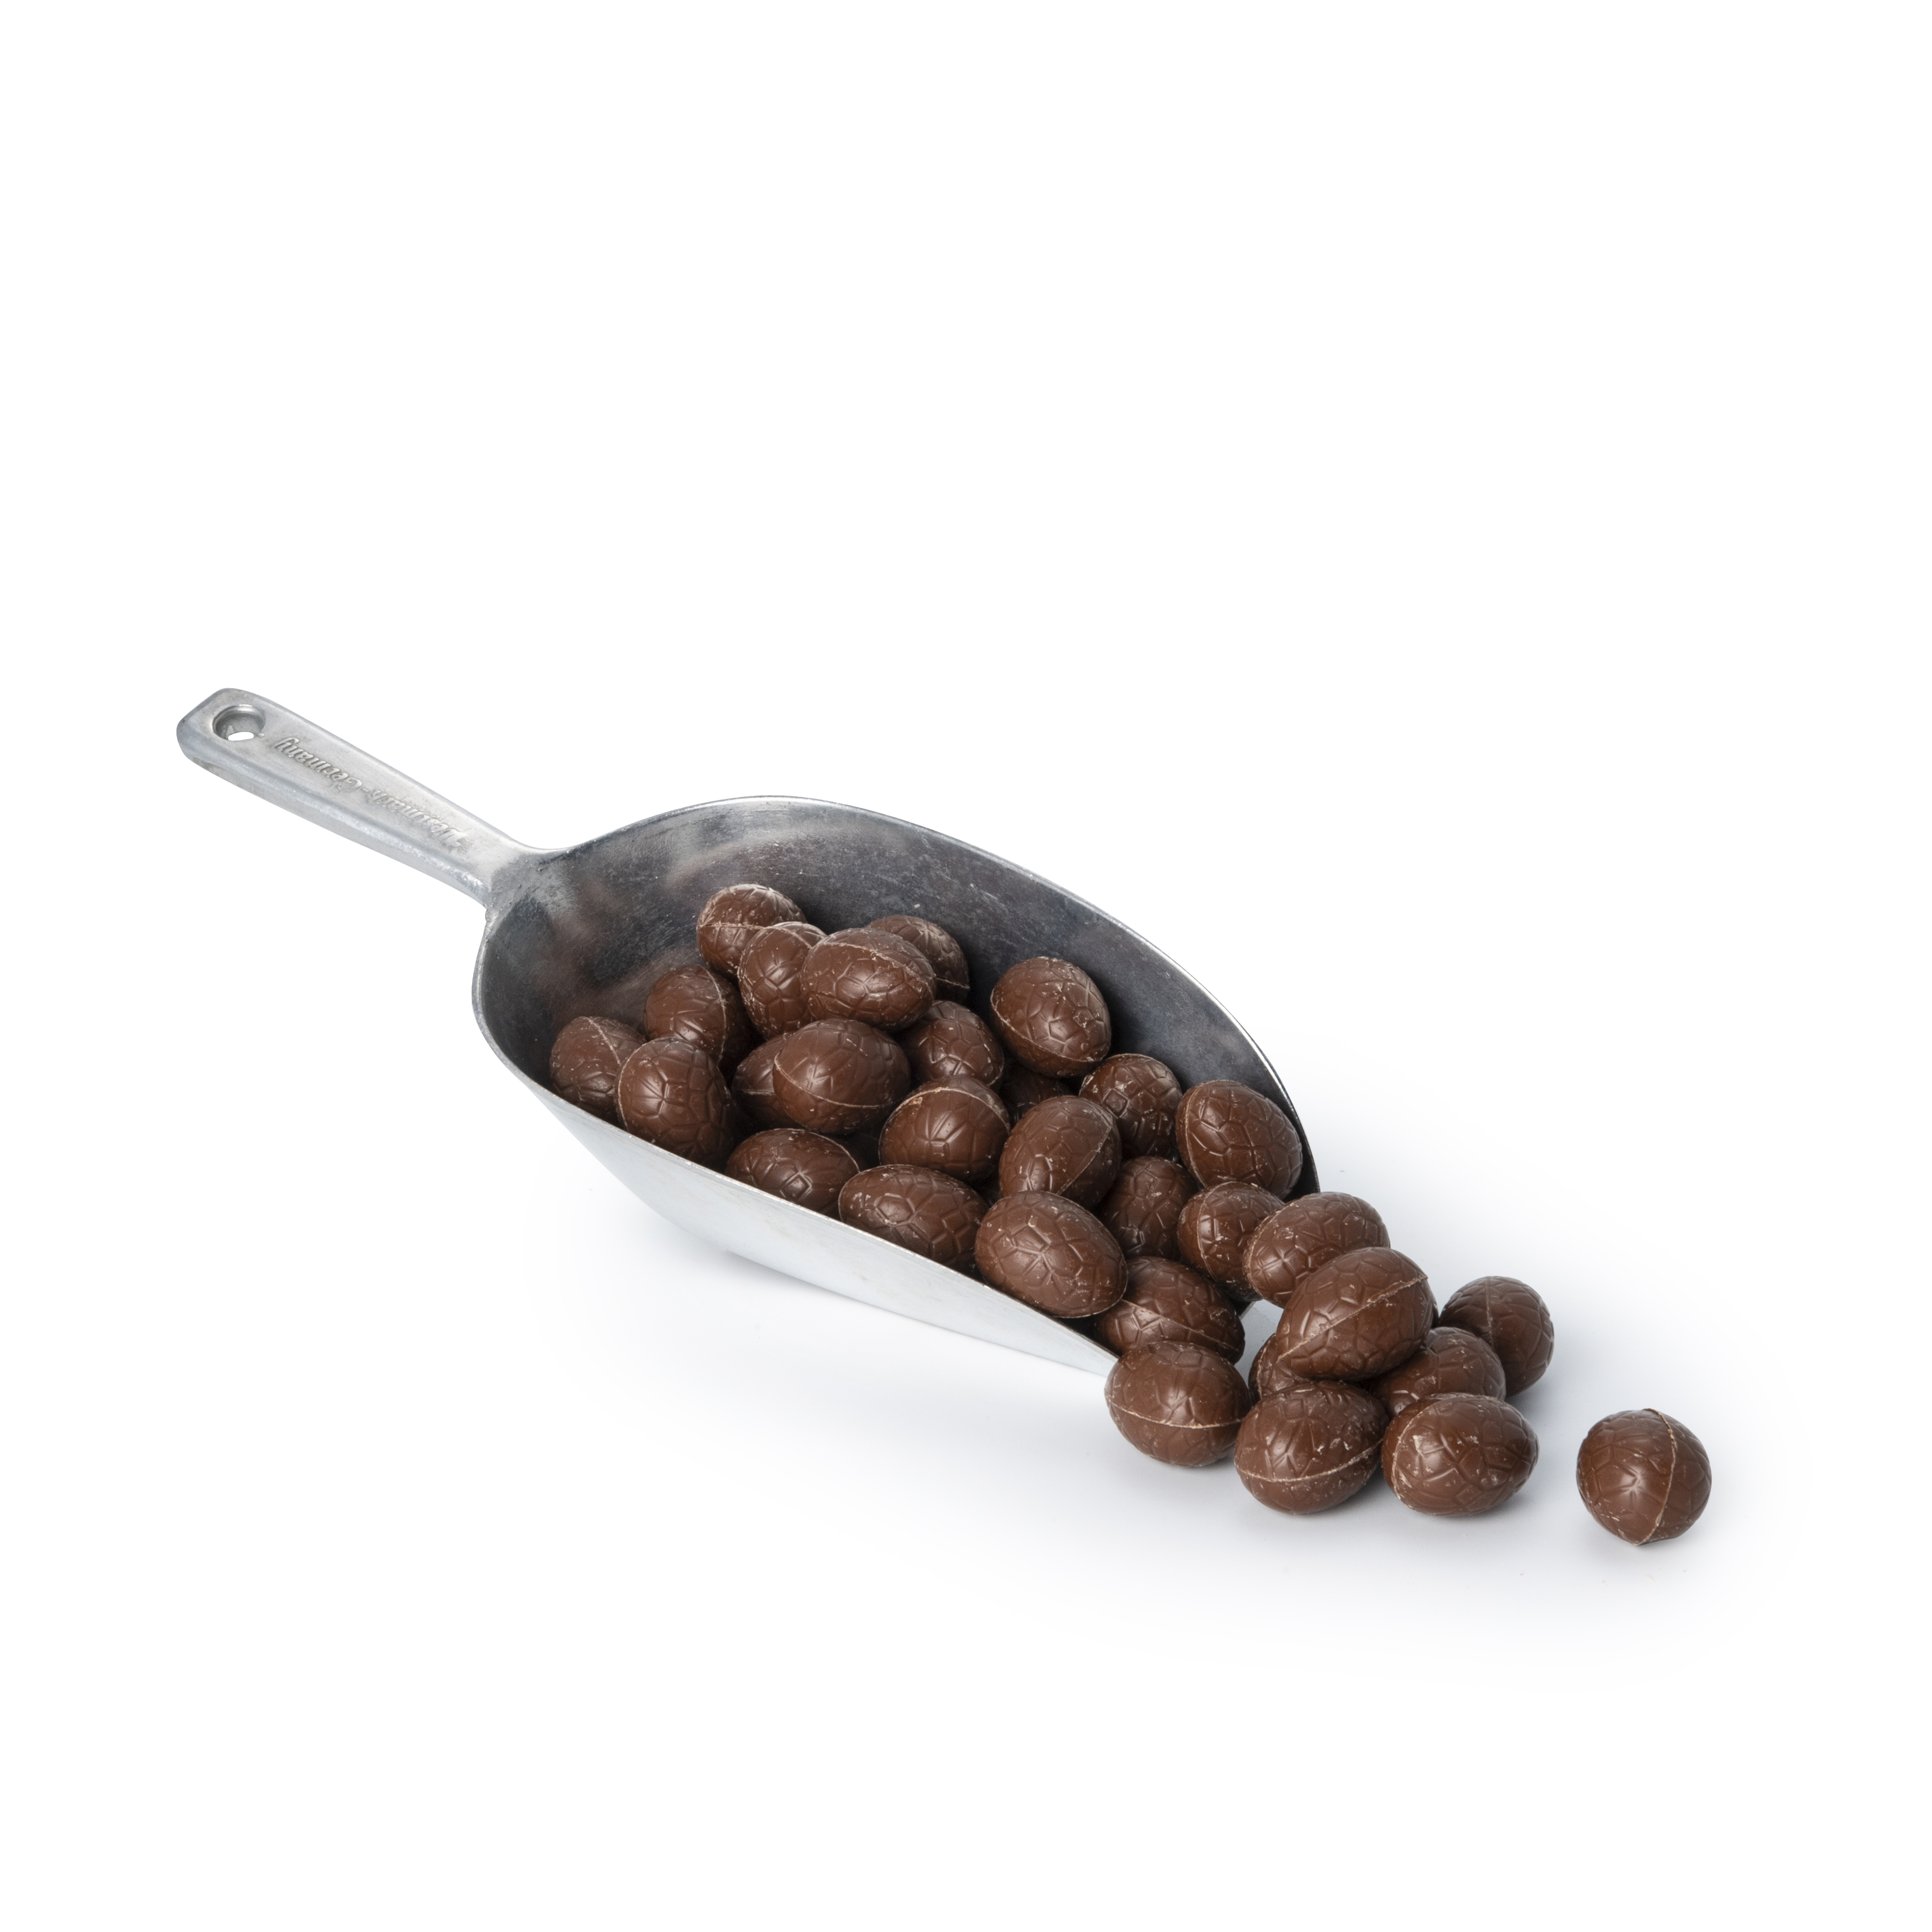 Nao Oeufs de Pâques chocolat au lait vrac bio 2.5kg - 2935 - Disponible de janvier à avril